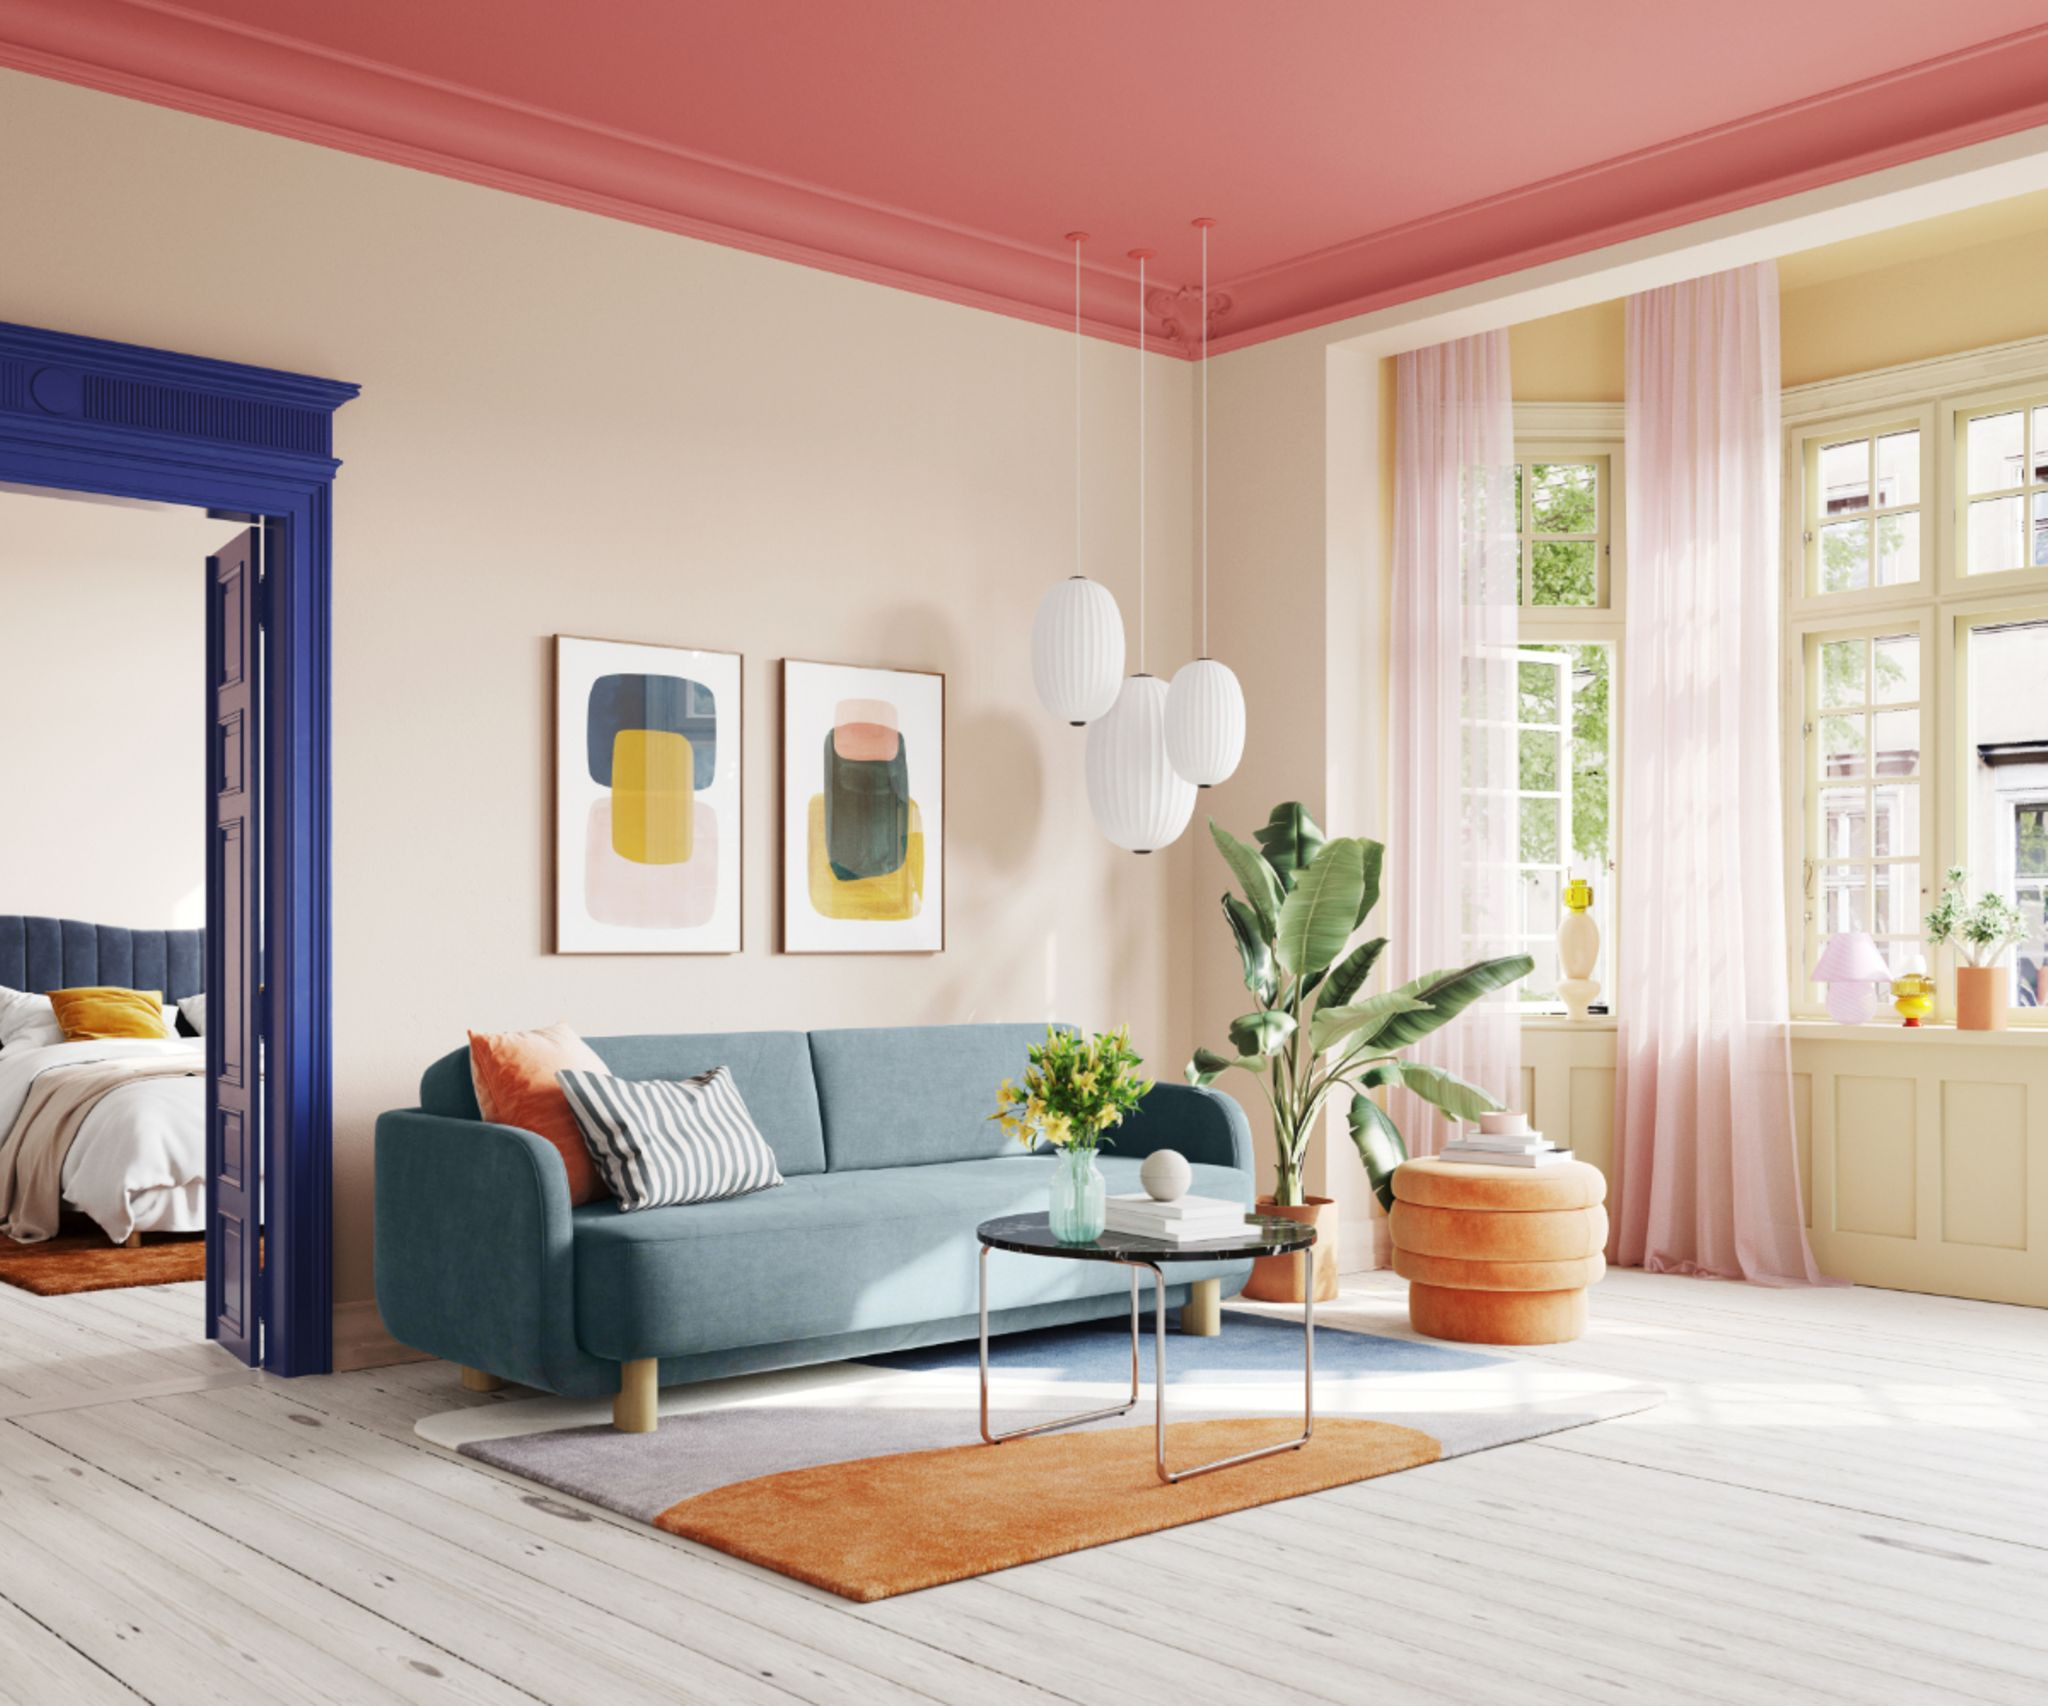 Decke Streichen: Ideen &amp; Tipps Für Die 5. Wand - [Schöner Wohnen] intended for Streichen Wandgestaltung Wohnzimmer Farbe